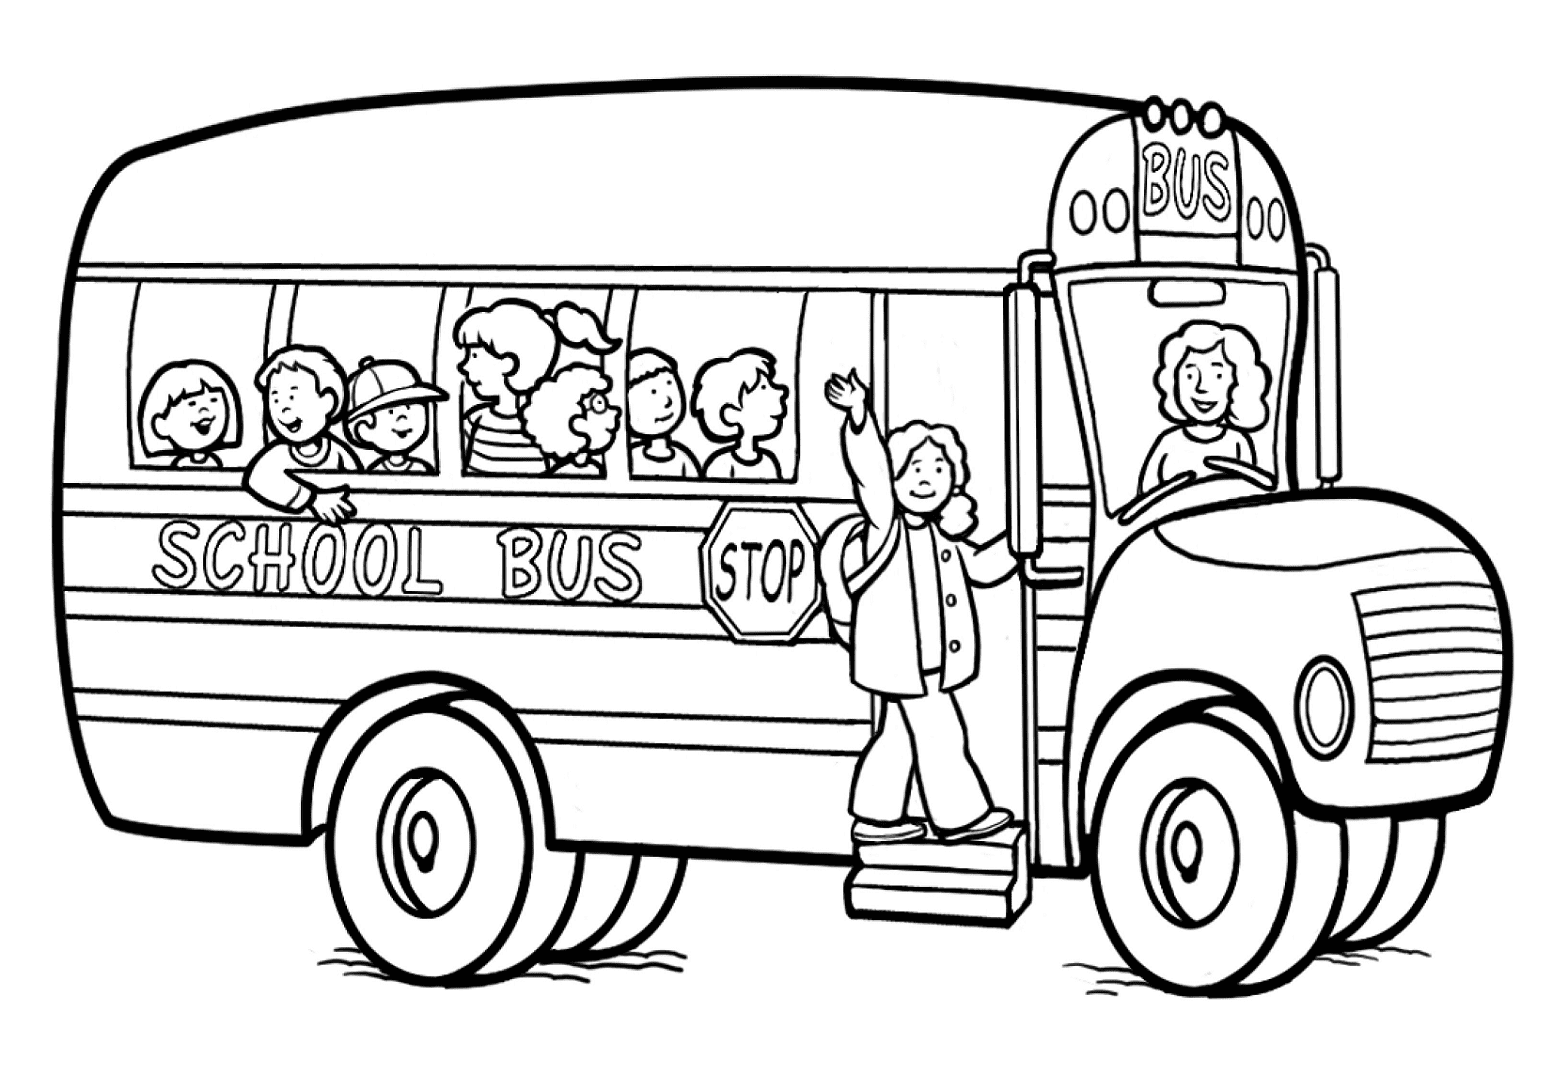 Imagen del autobús escolar del autobús escolar